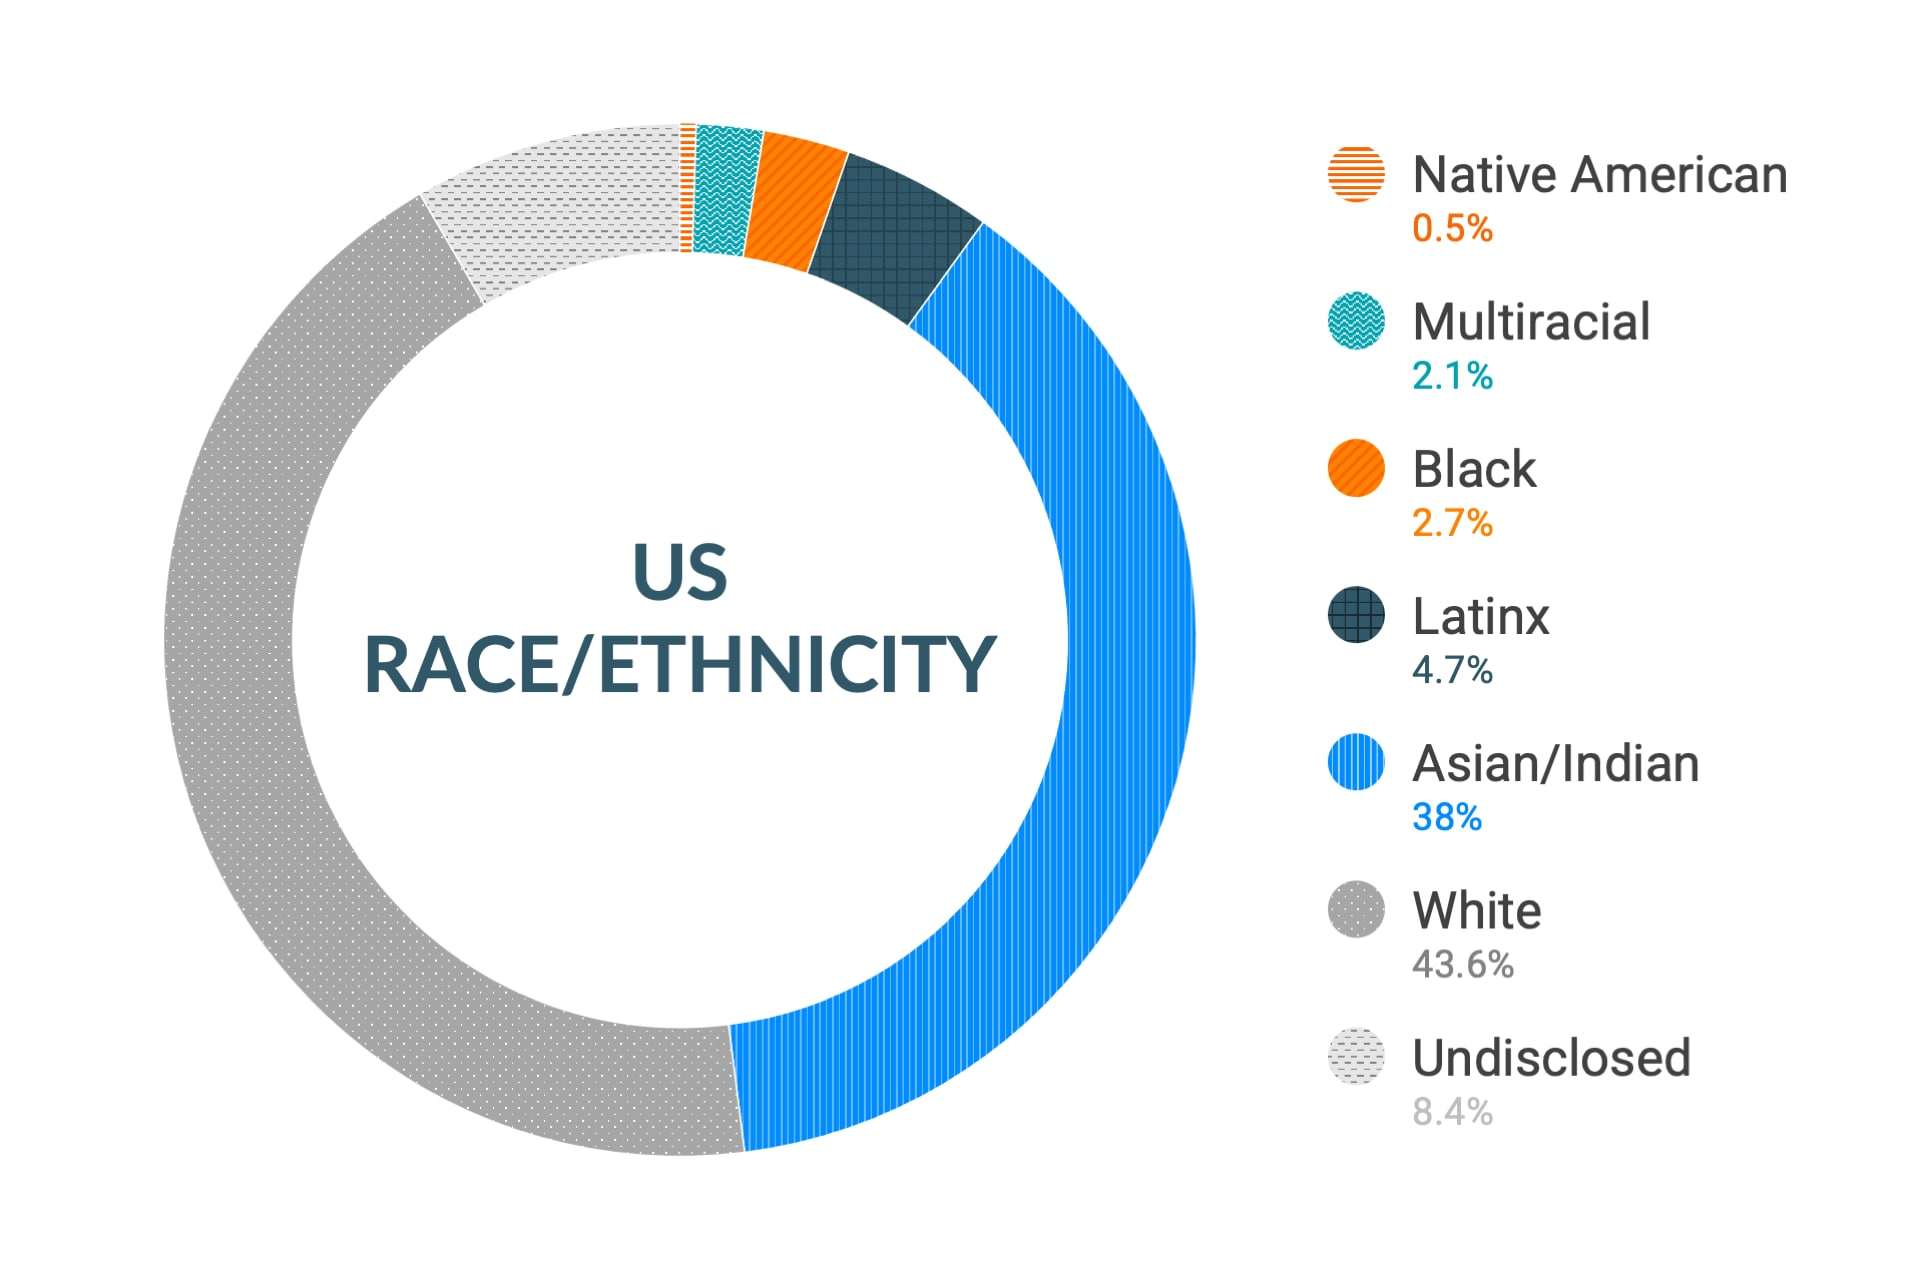 미국 지역 인종 및 민족에 대한 Cloudera의 다양성 및 포용력 데이터: 아메리카 원주민 0.4%, 다인종 2.1%, 흑인 2.8%, 라틴계 4.1%, 아시아인 및 인도인 29.7%, 백인 40.1%, 비공개 20.8%